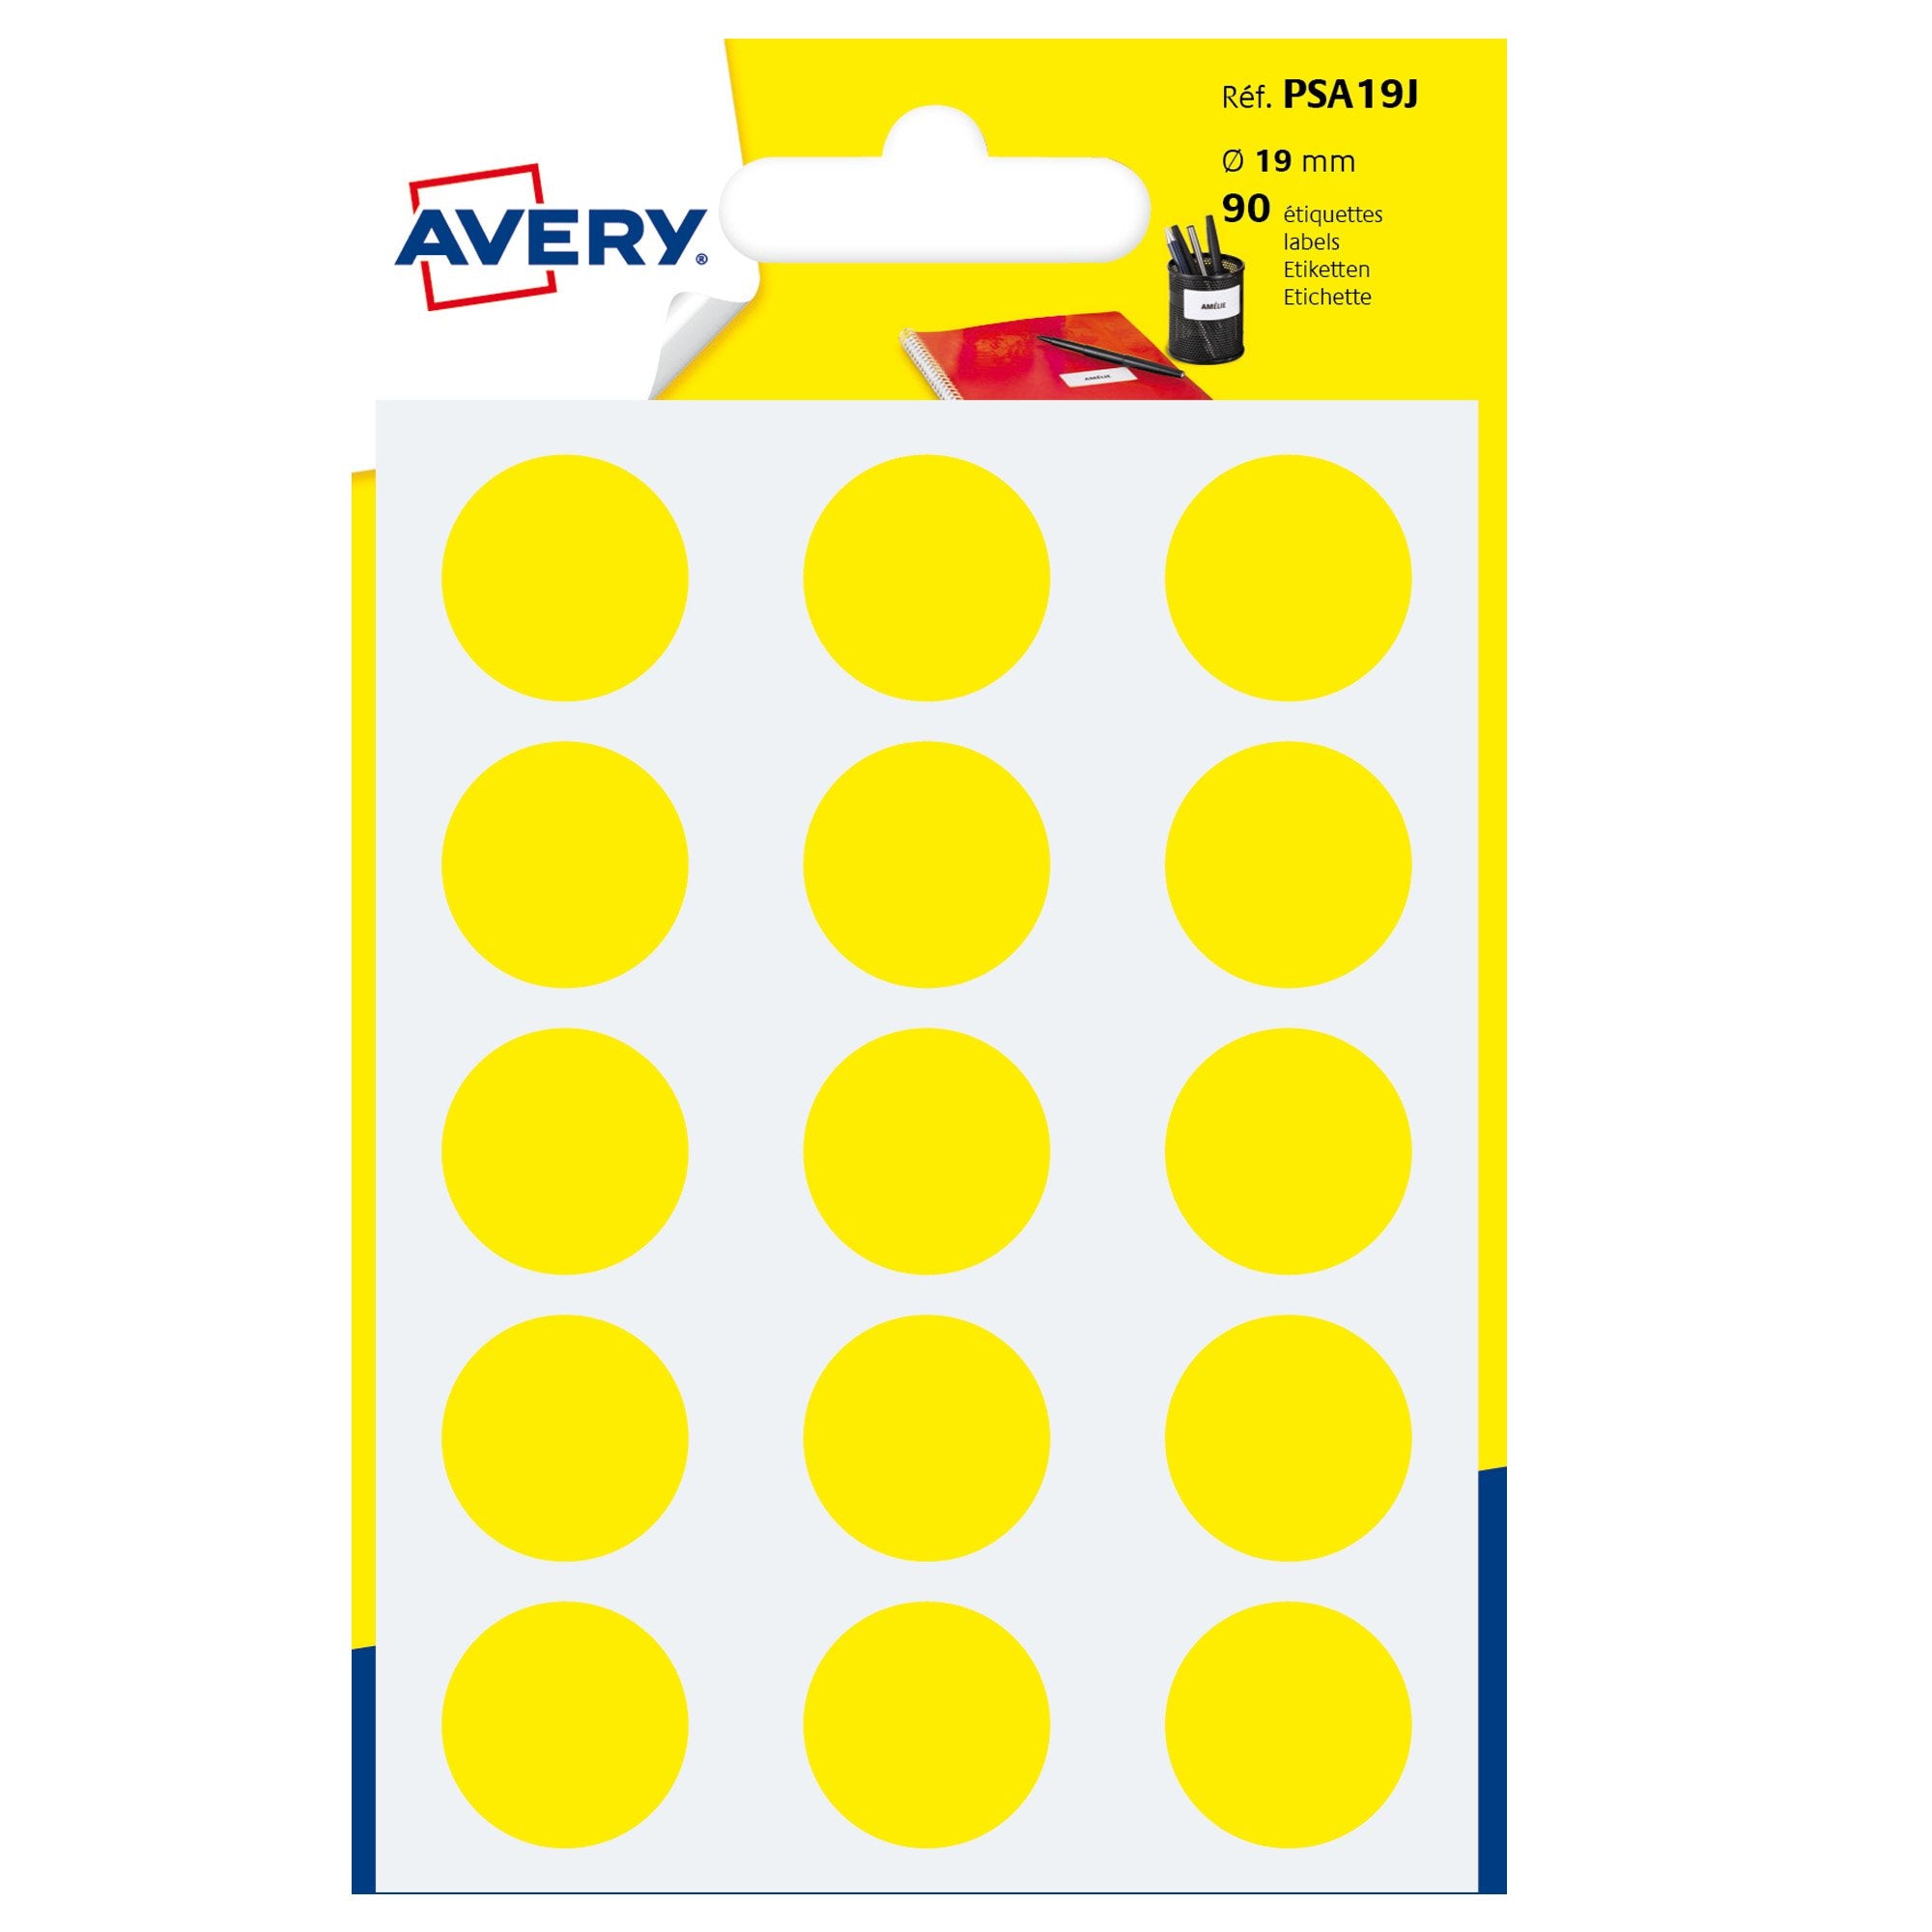 avery-blister-90-etichetta-adesiva-tonda-psa-giallo-d19mm